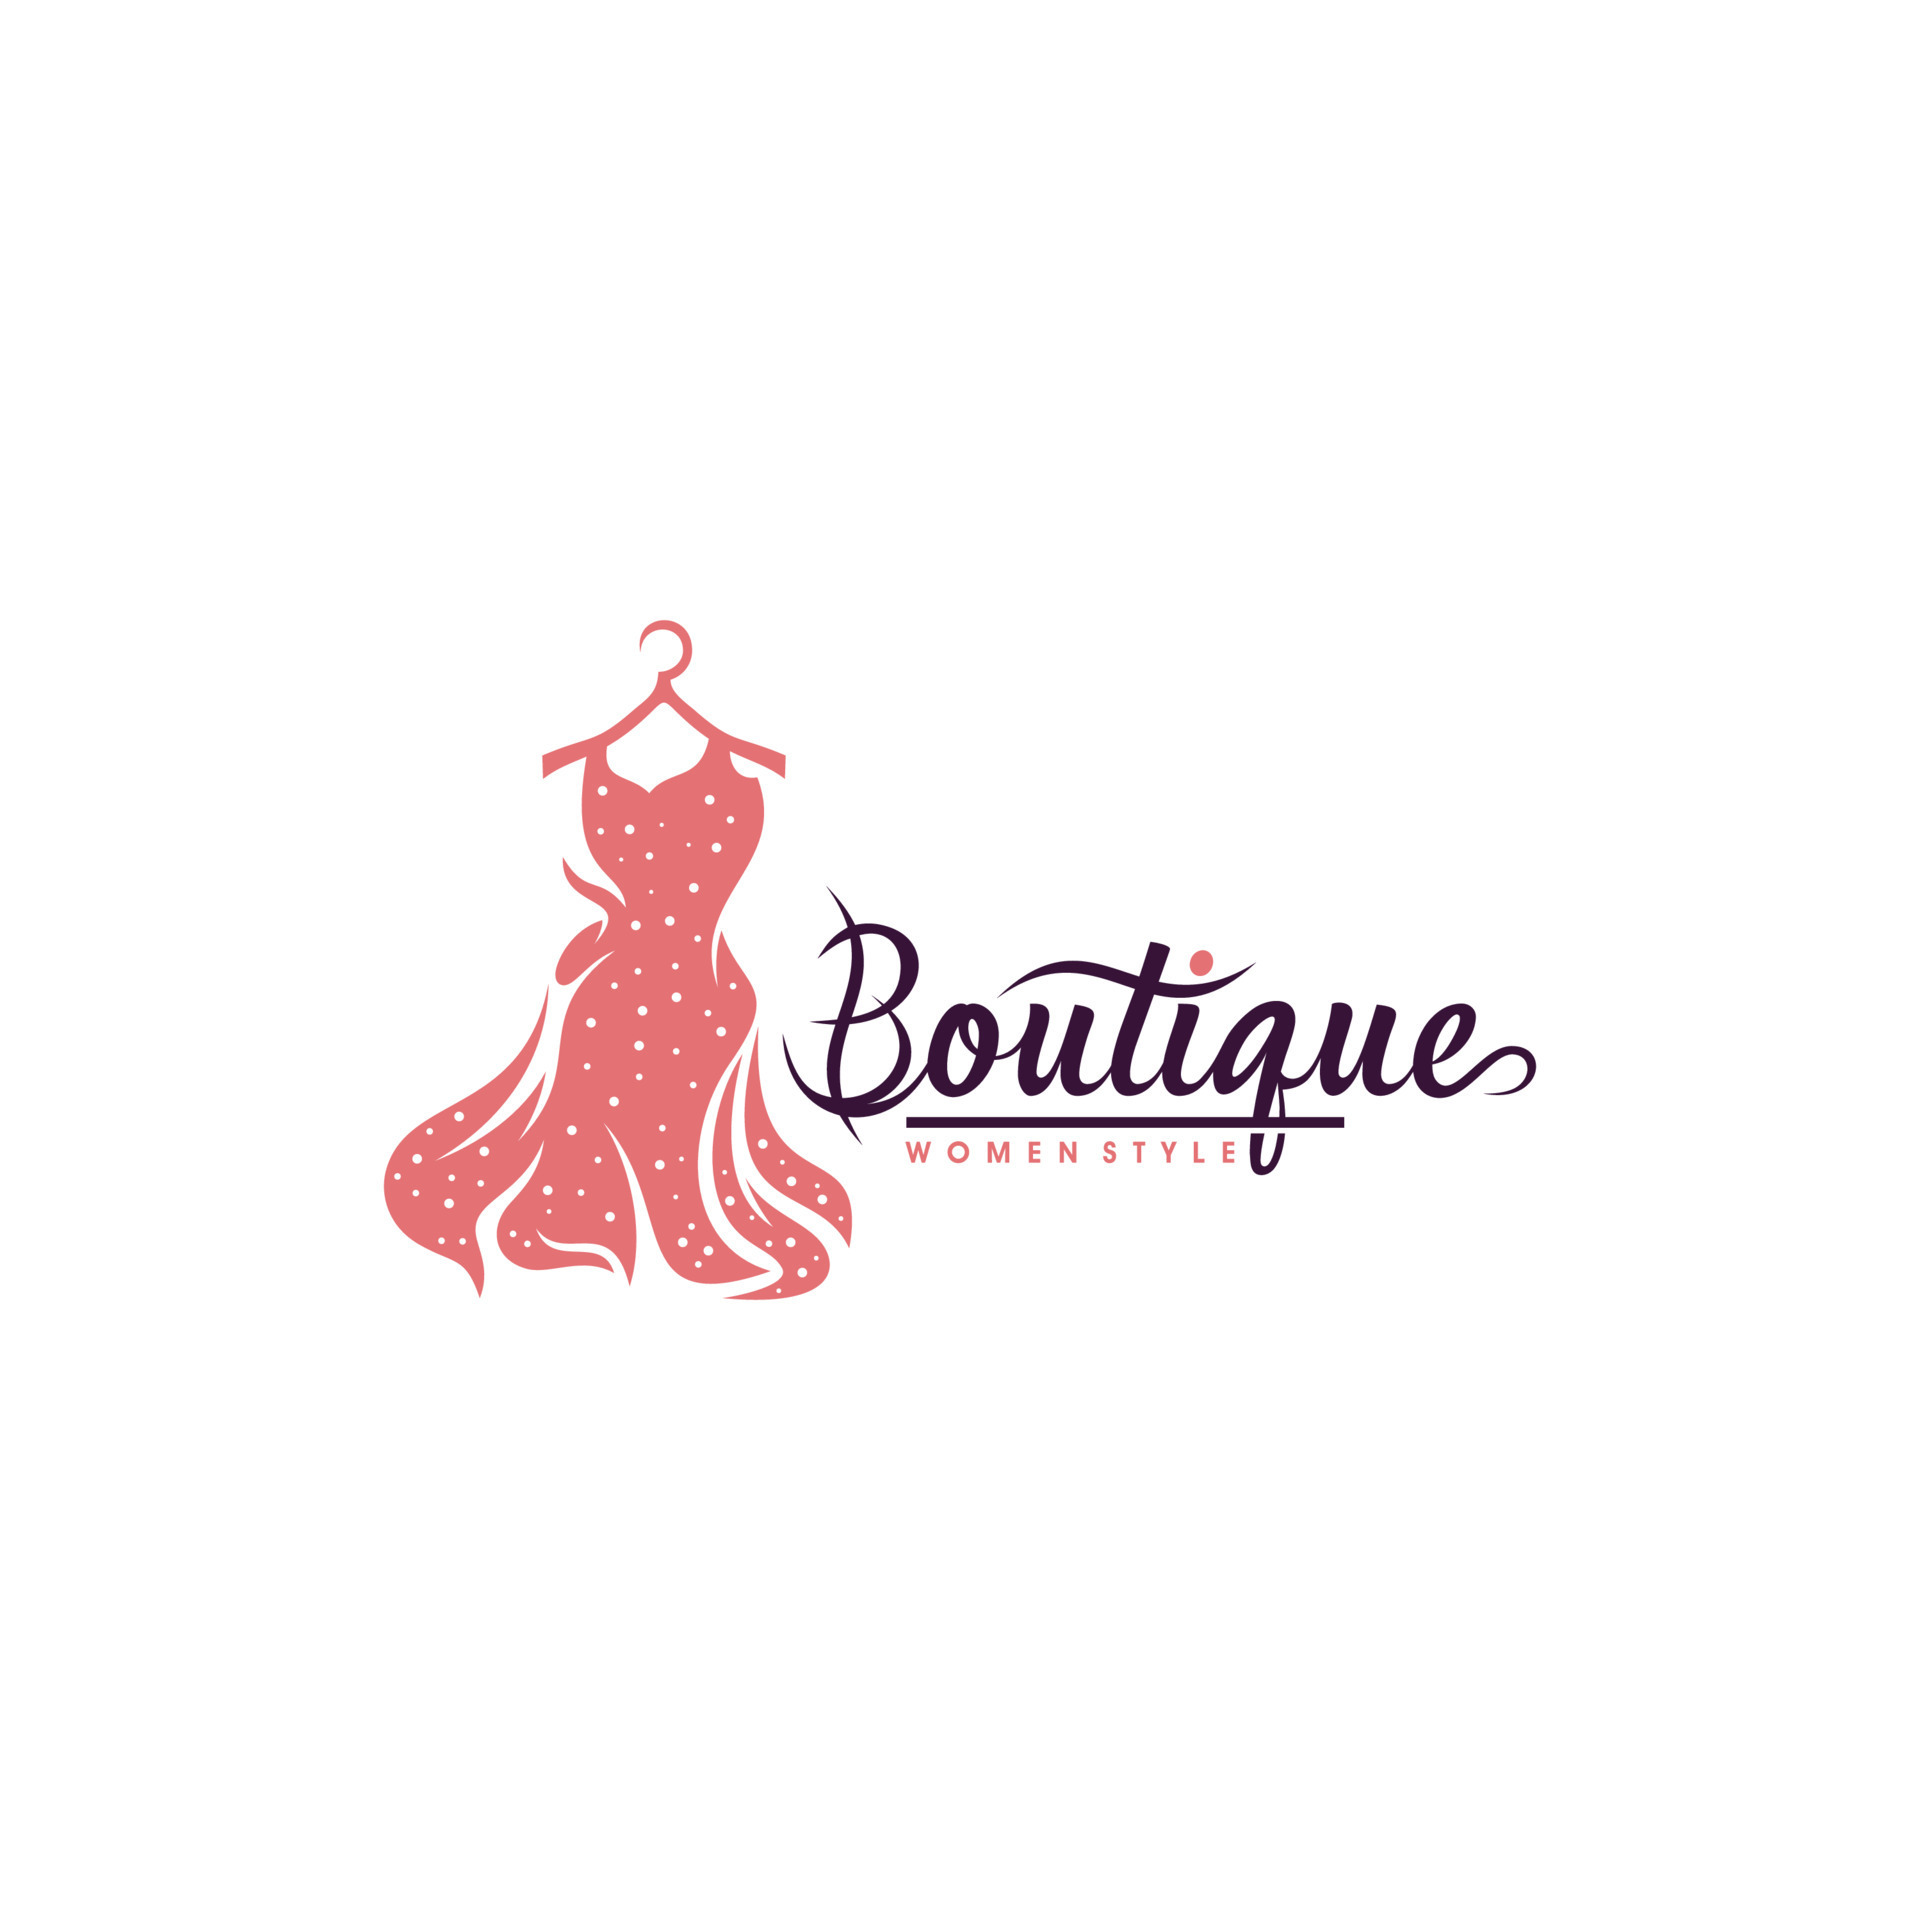 luxury boutique logo vector templates 21826595 Vector Art at Vecteezy